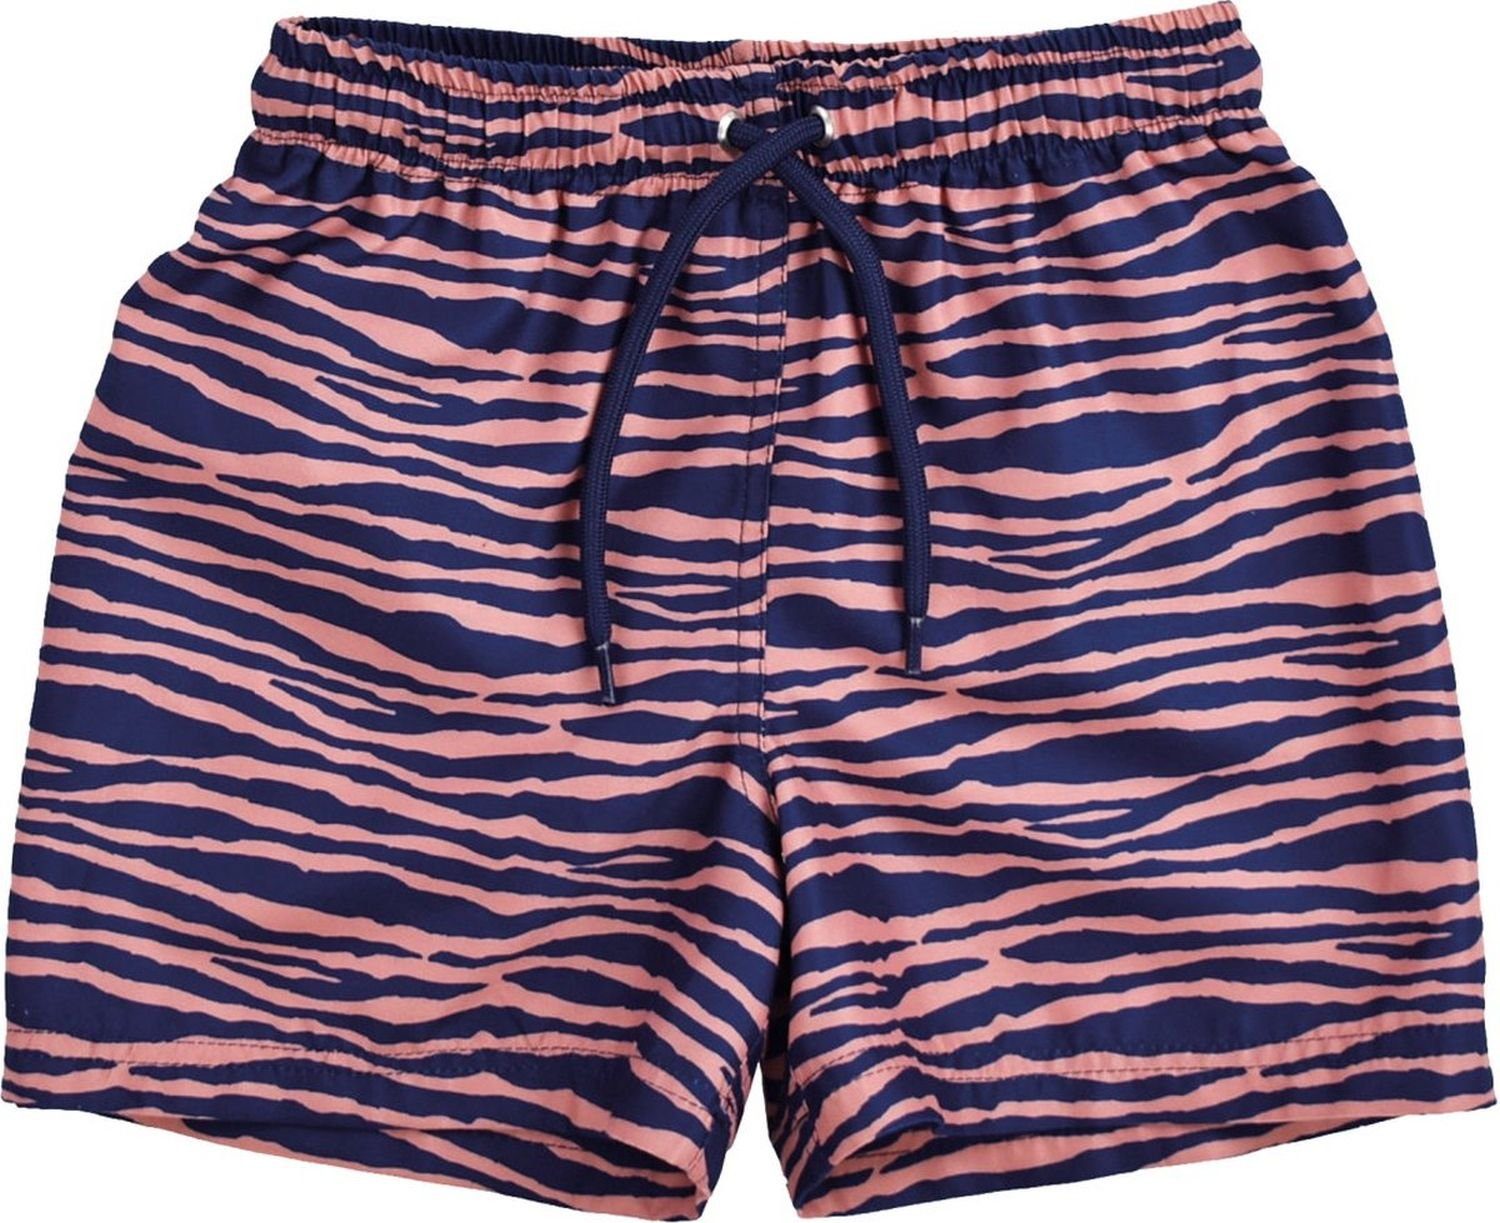 80% / Schwimmboxershorts, Essentials Swim EL Essentials Swim PL für Jungen Zebra Muste, 20% blau/orange Badeponcho